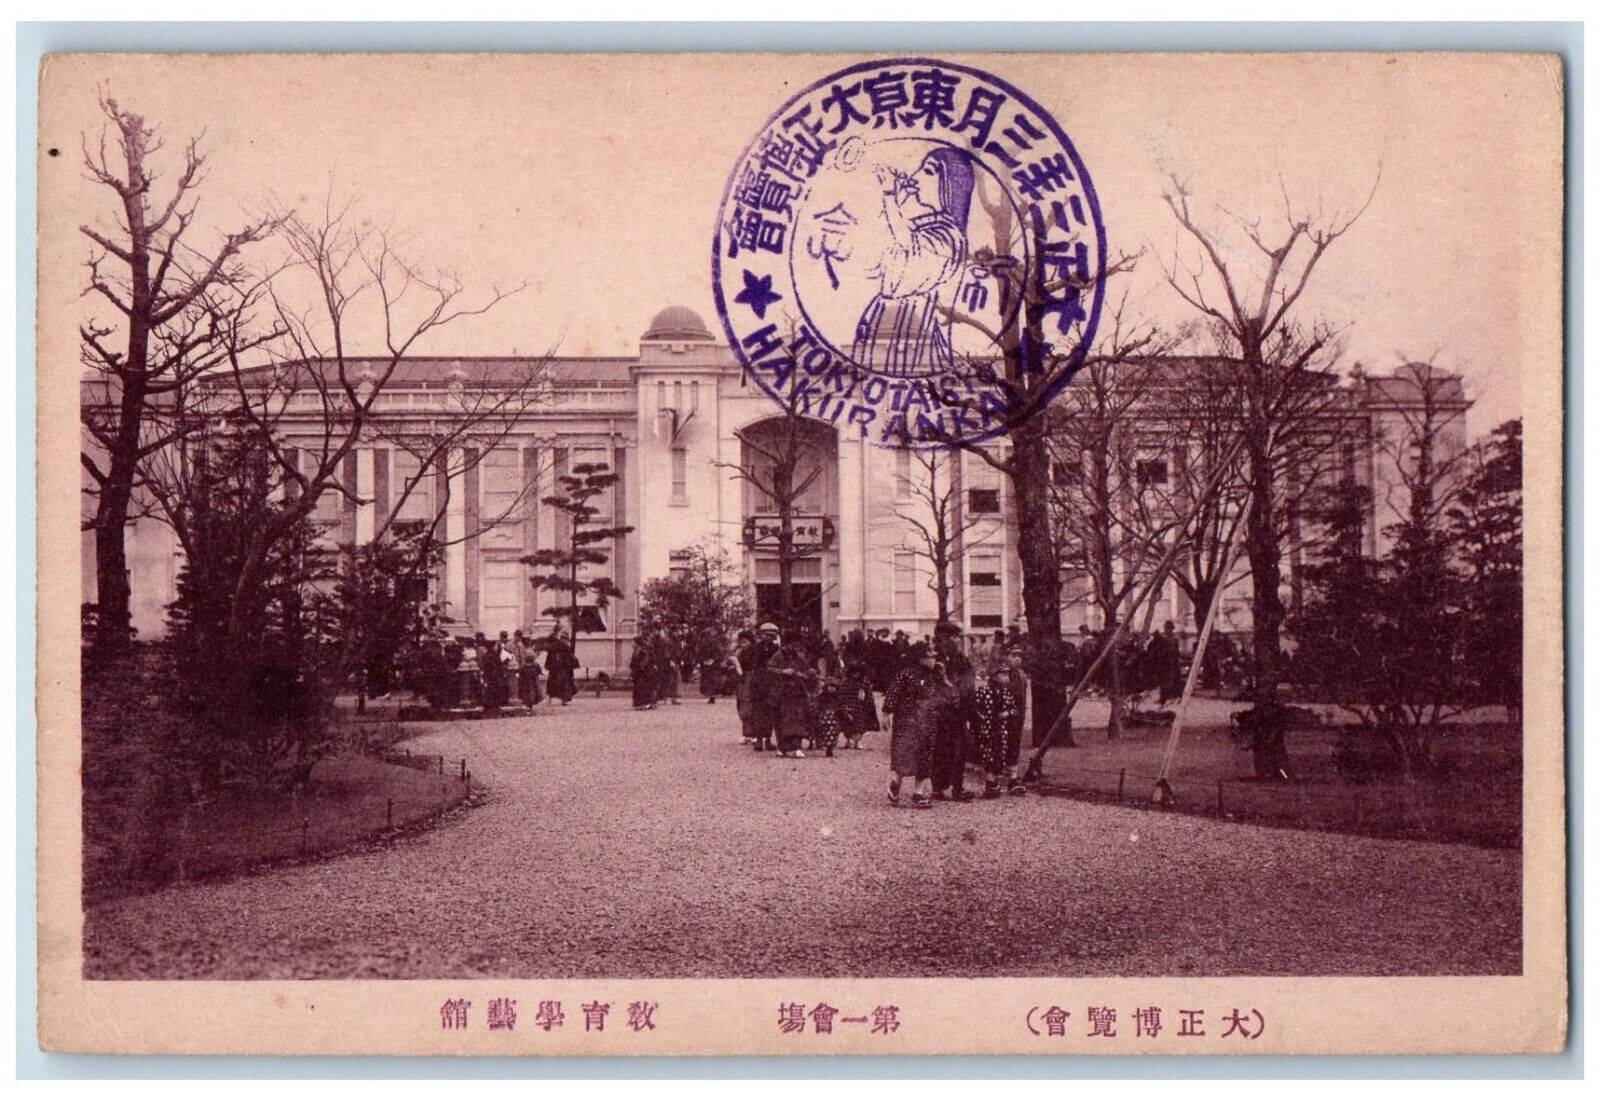 Japan Postcard Museum Art Education Tokyo Taisyo Hakurankai Stamp c1940's